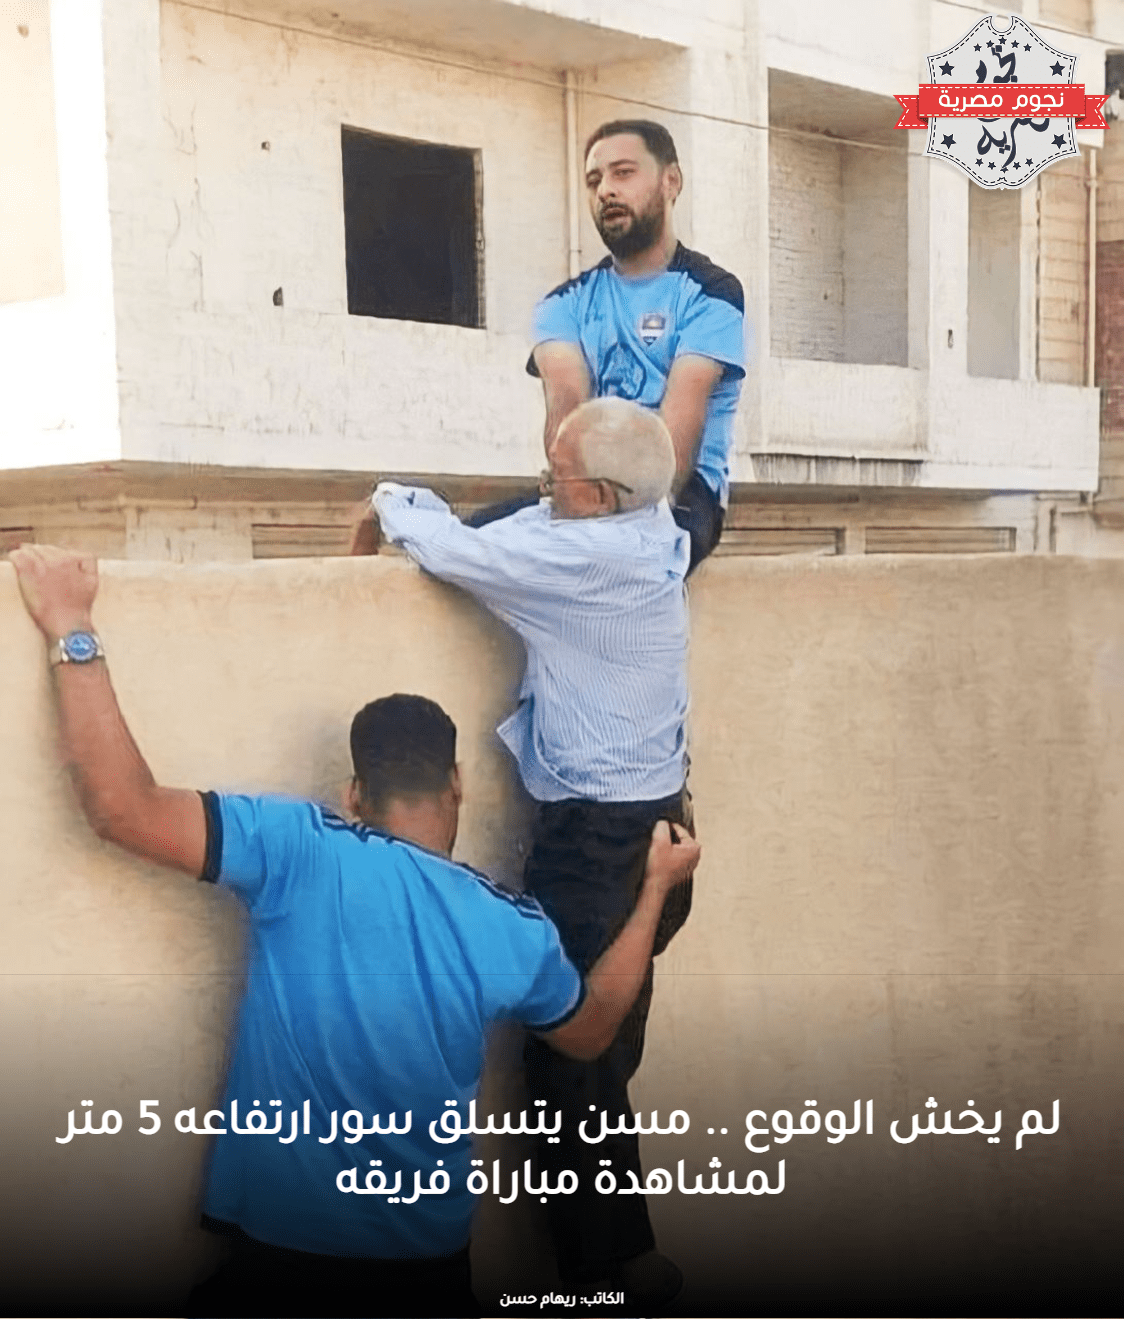 لحظة تسلق محمد أمشير السور الخاص بالاستاد لتشجيع فريقه، المصدر: العربية نت